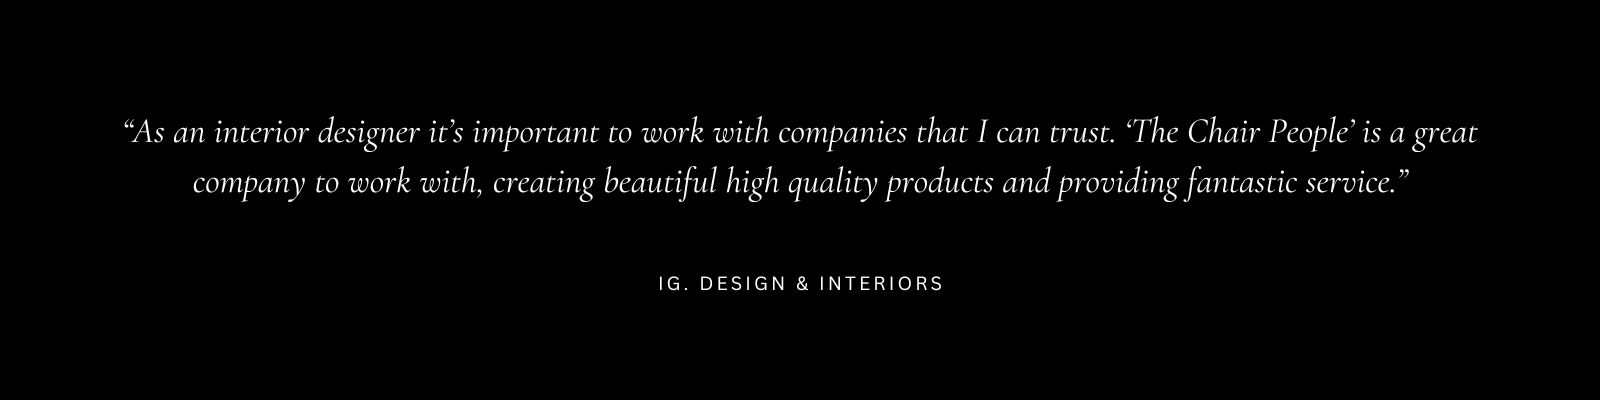 designer image quote